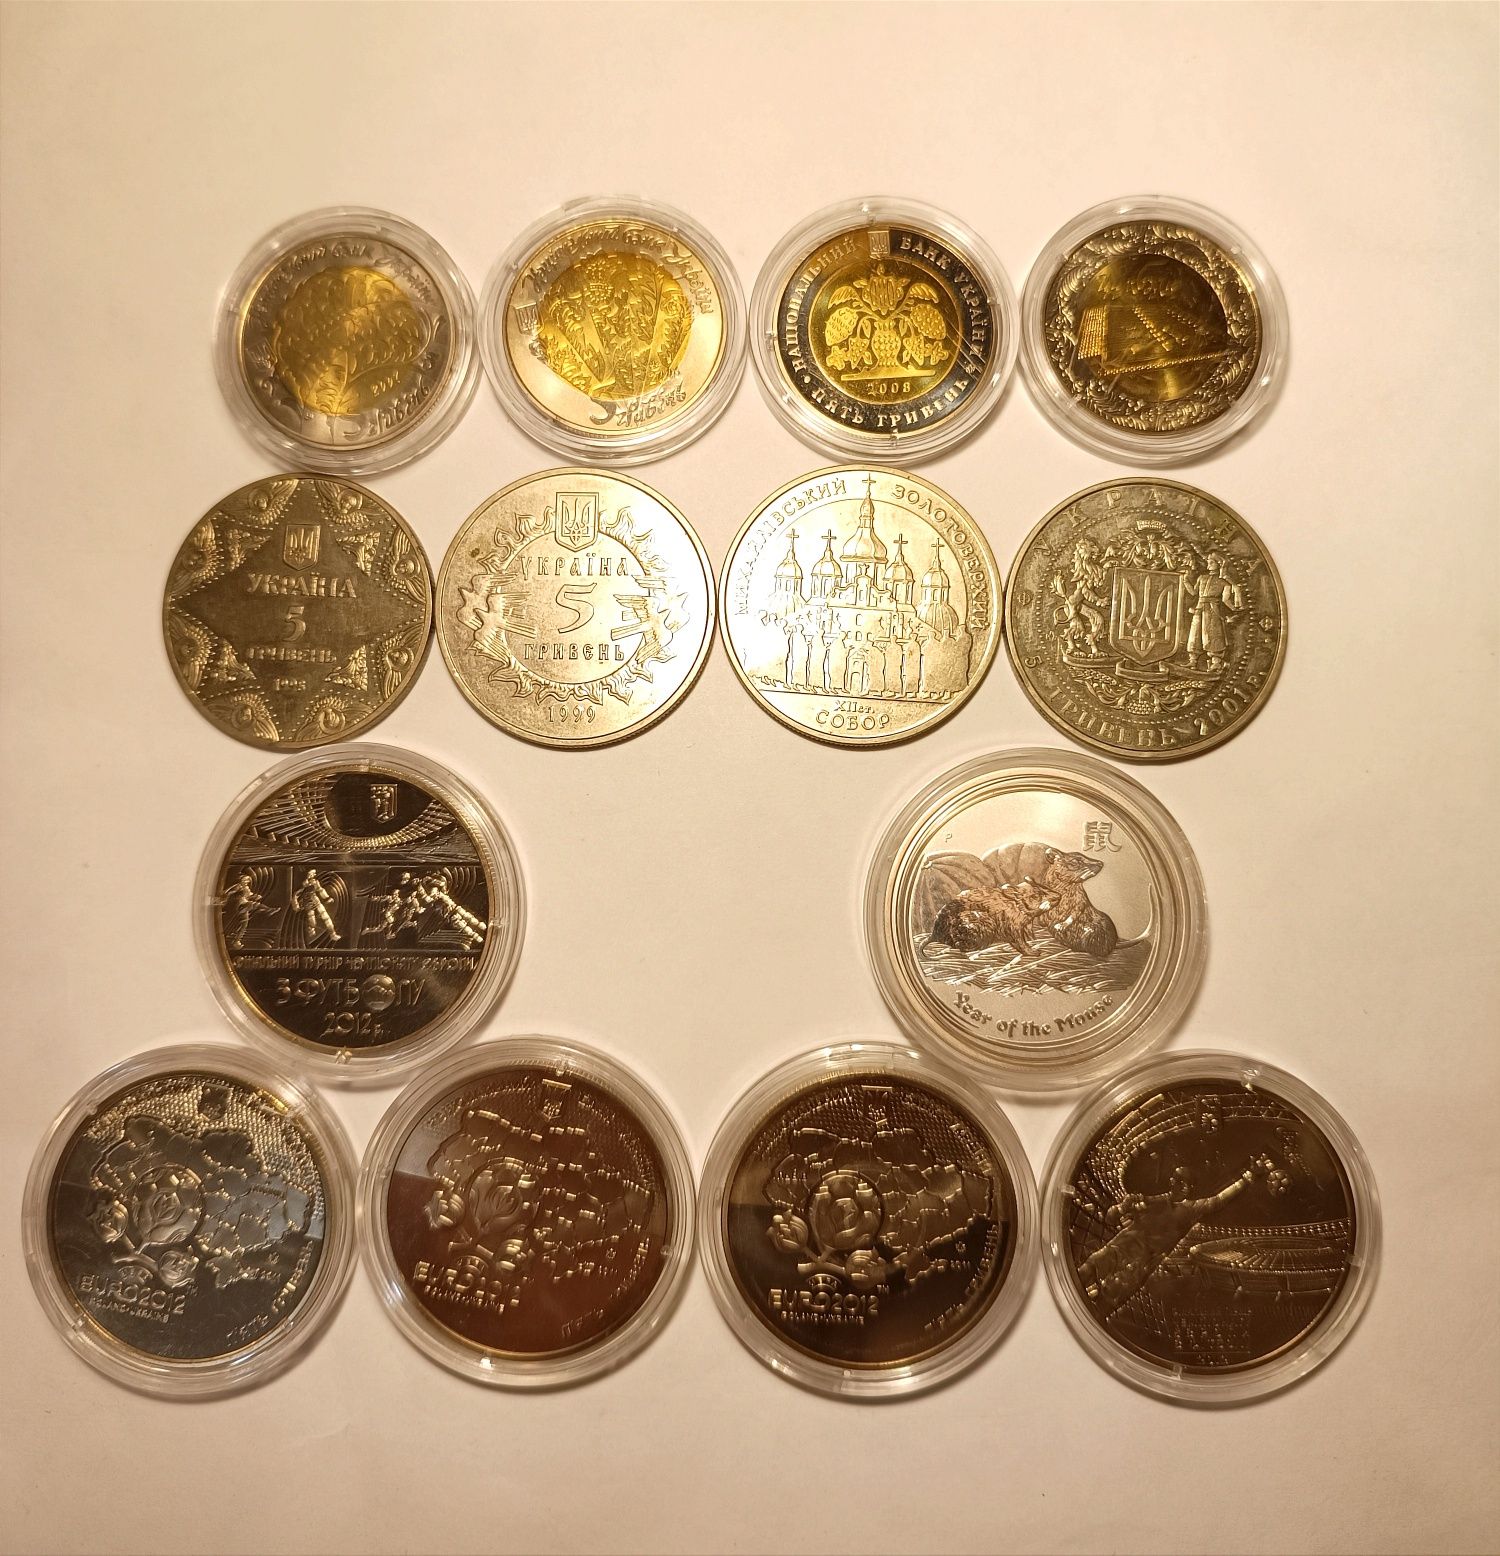 Колекція монет нумізматика колекційні нумизматика монеты коллекционные